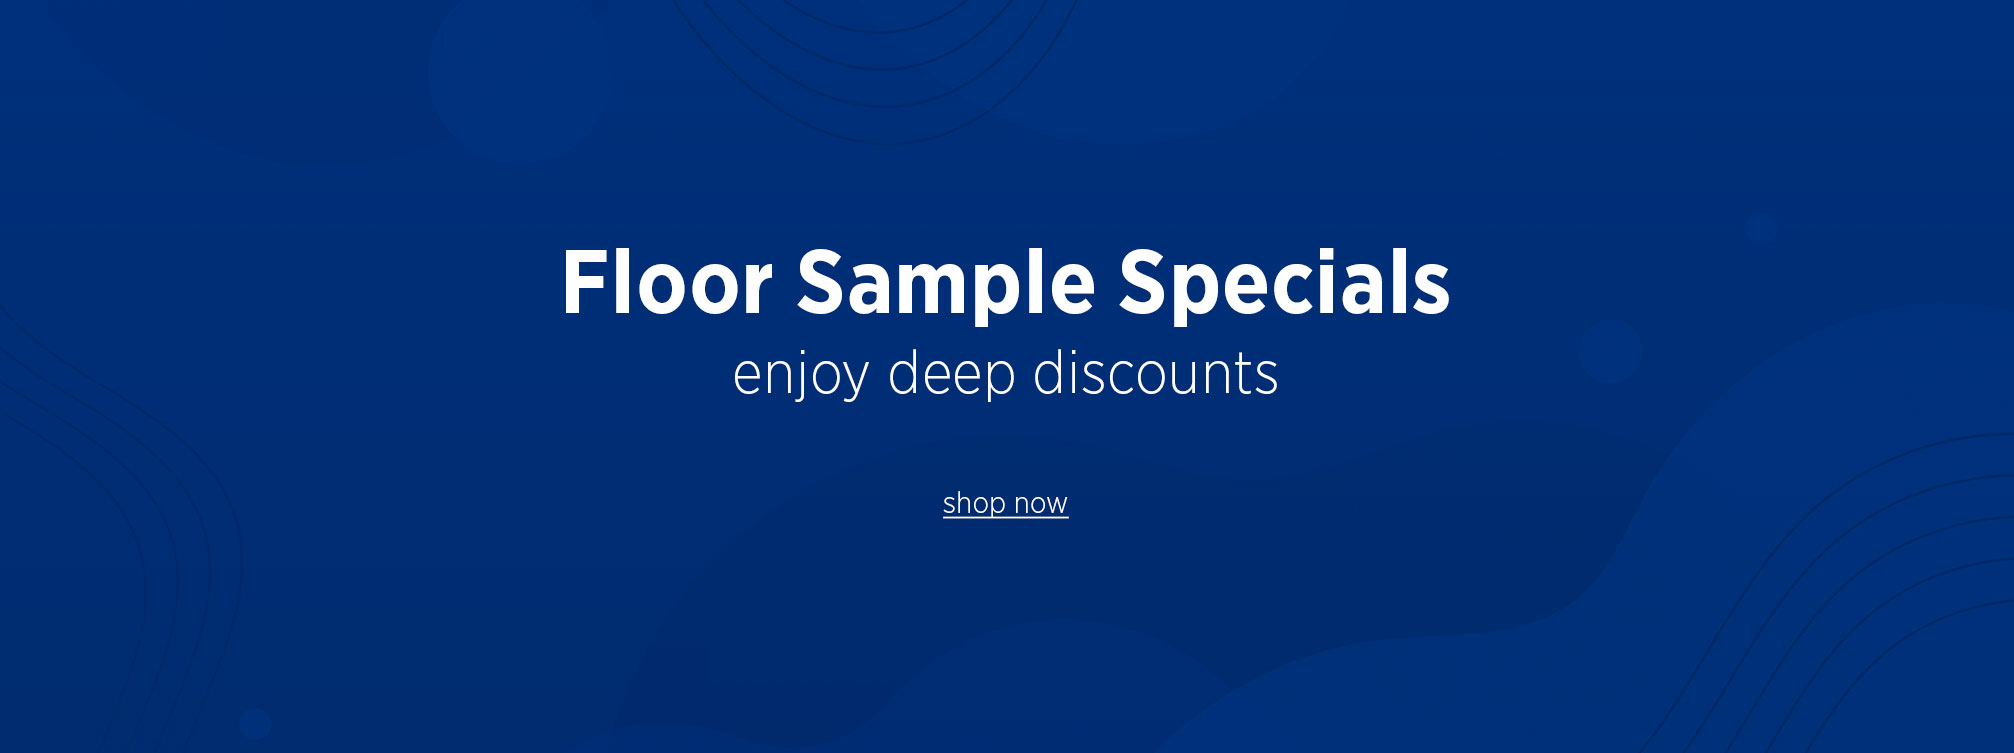 Floor Sample Specials